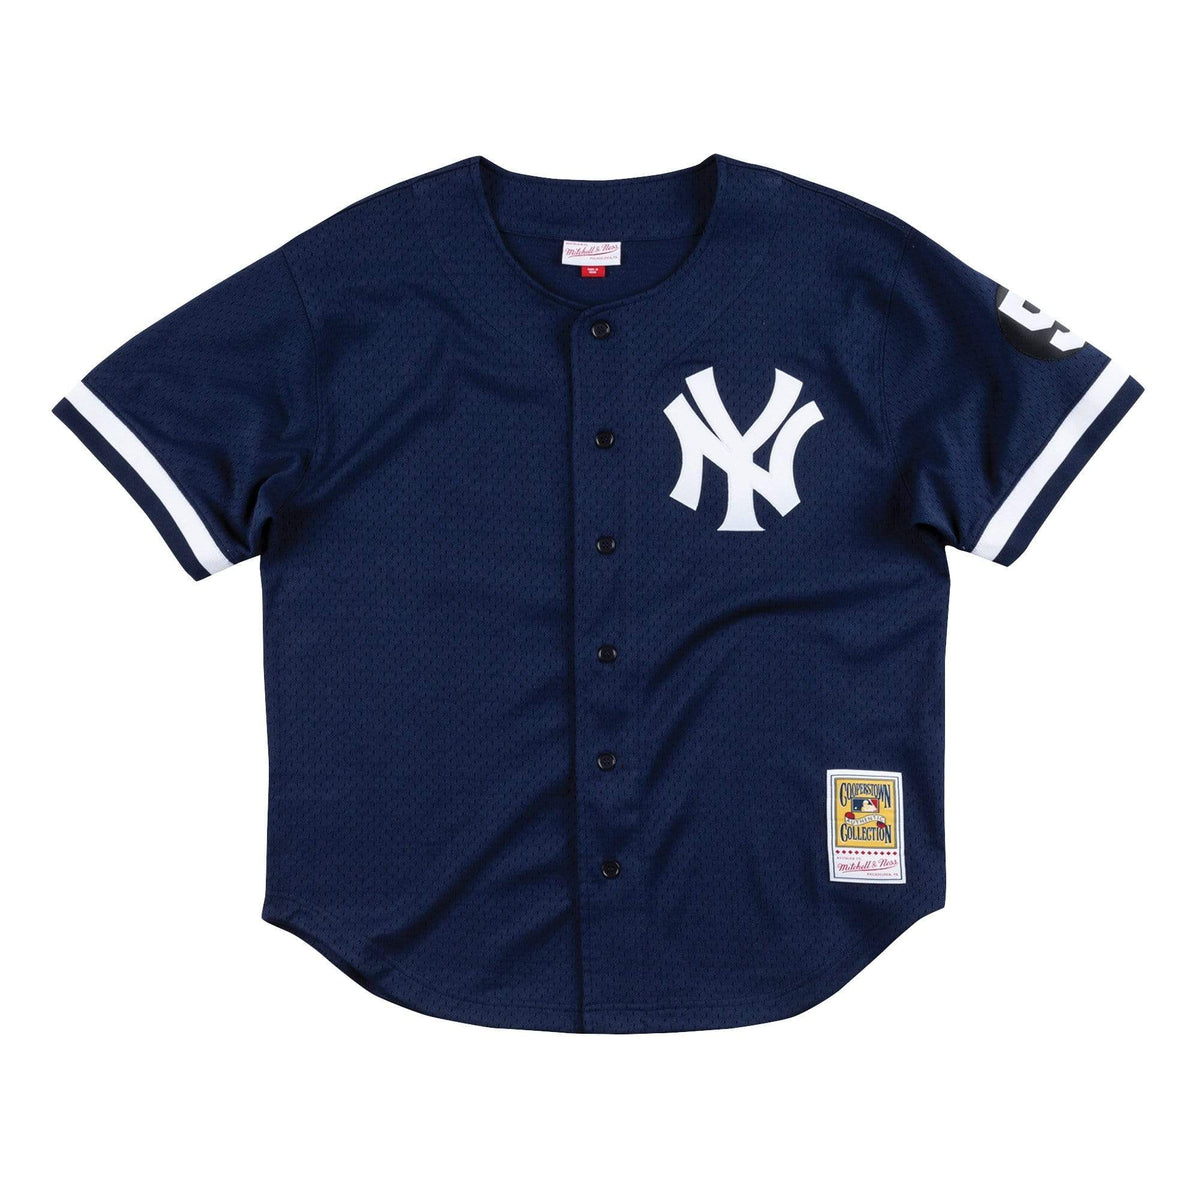 Authentic Derek Jeter New York Yankees 1998 BP Jersey - Shop